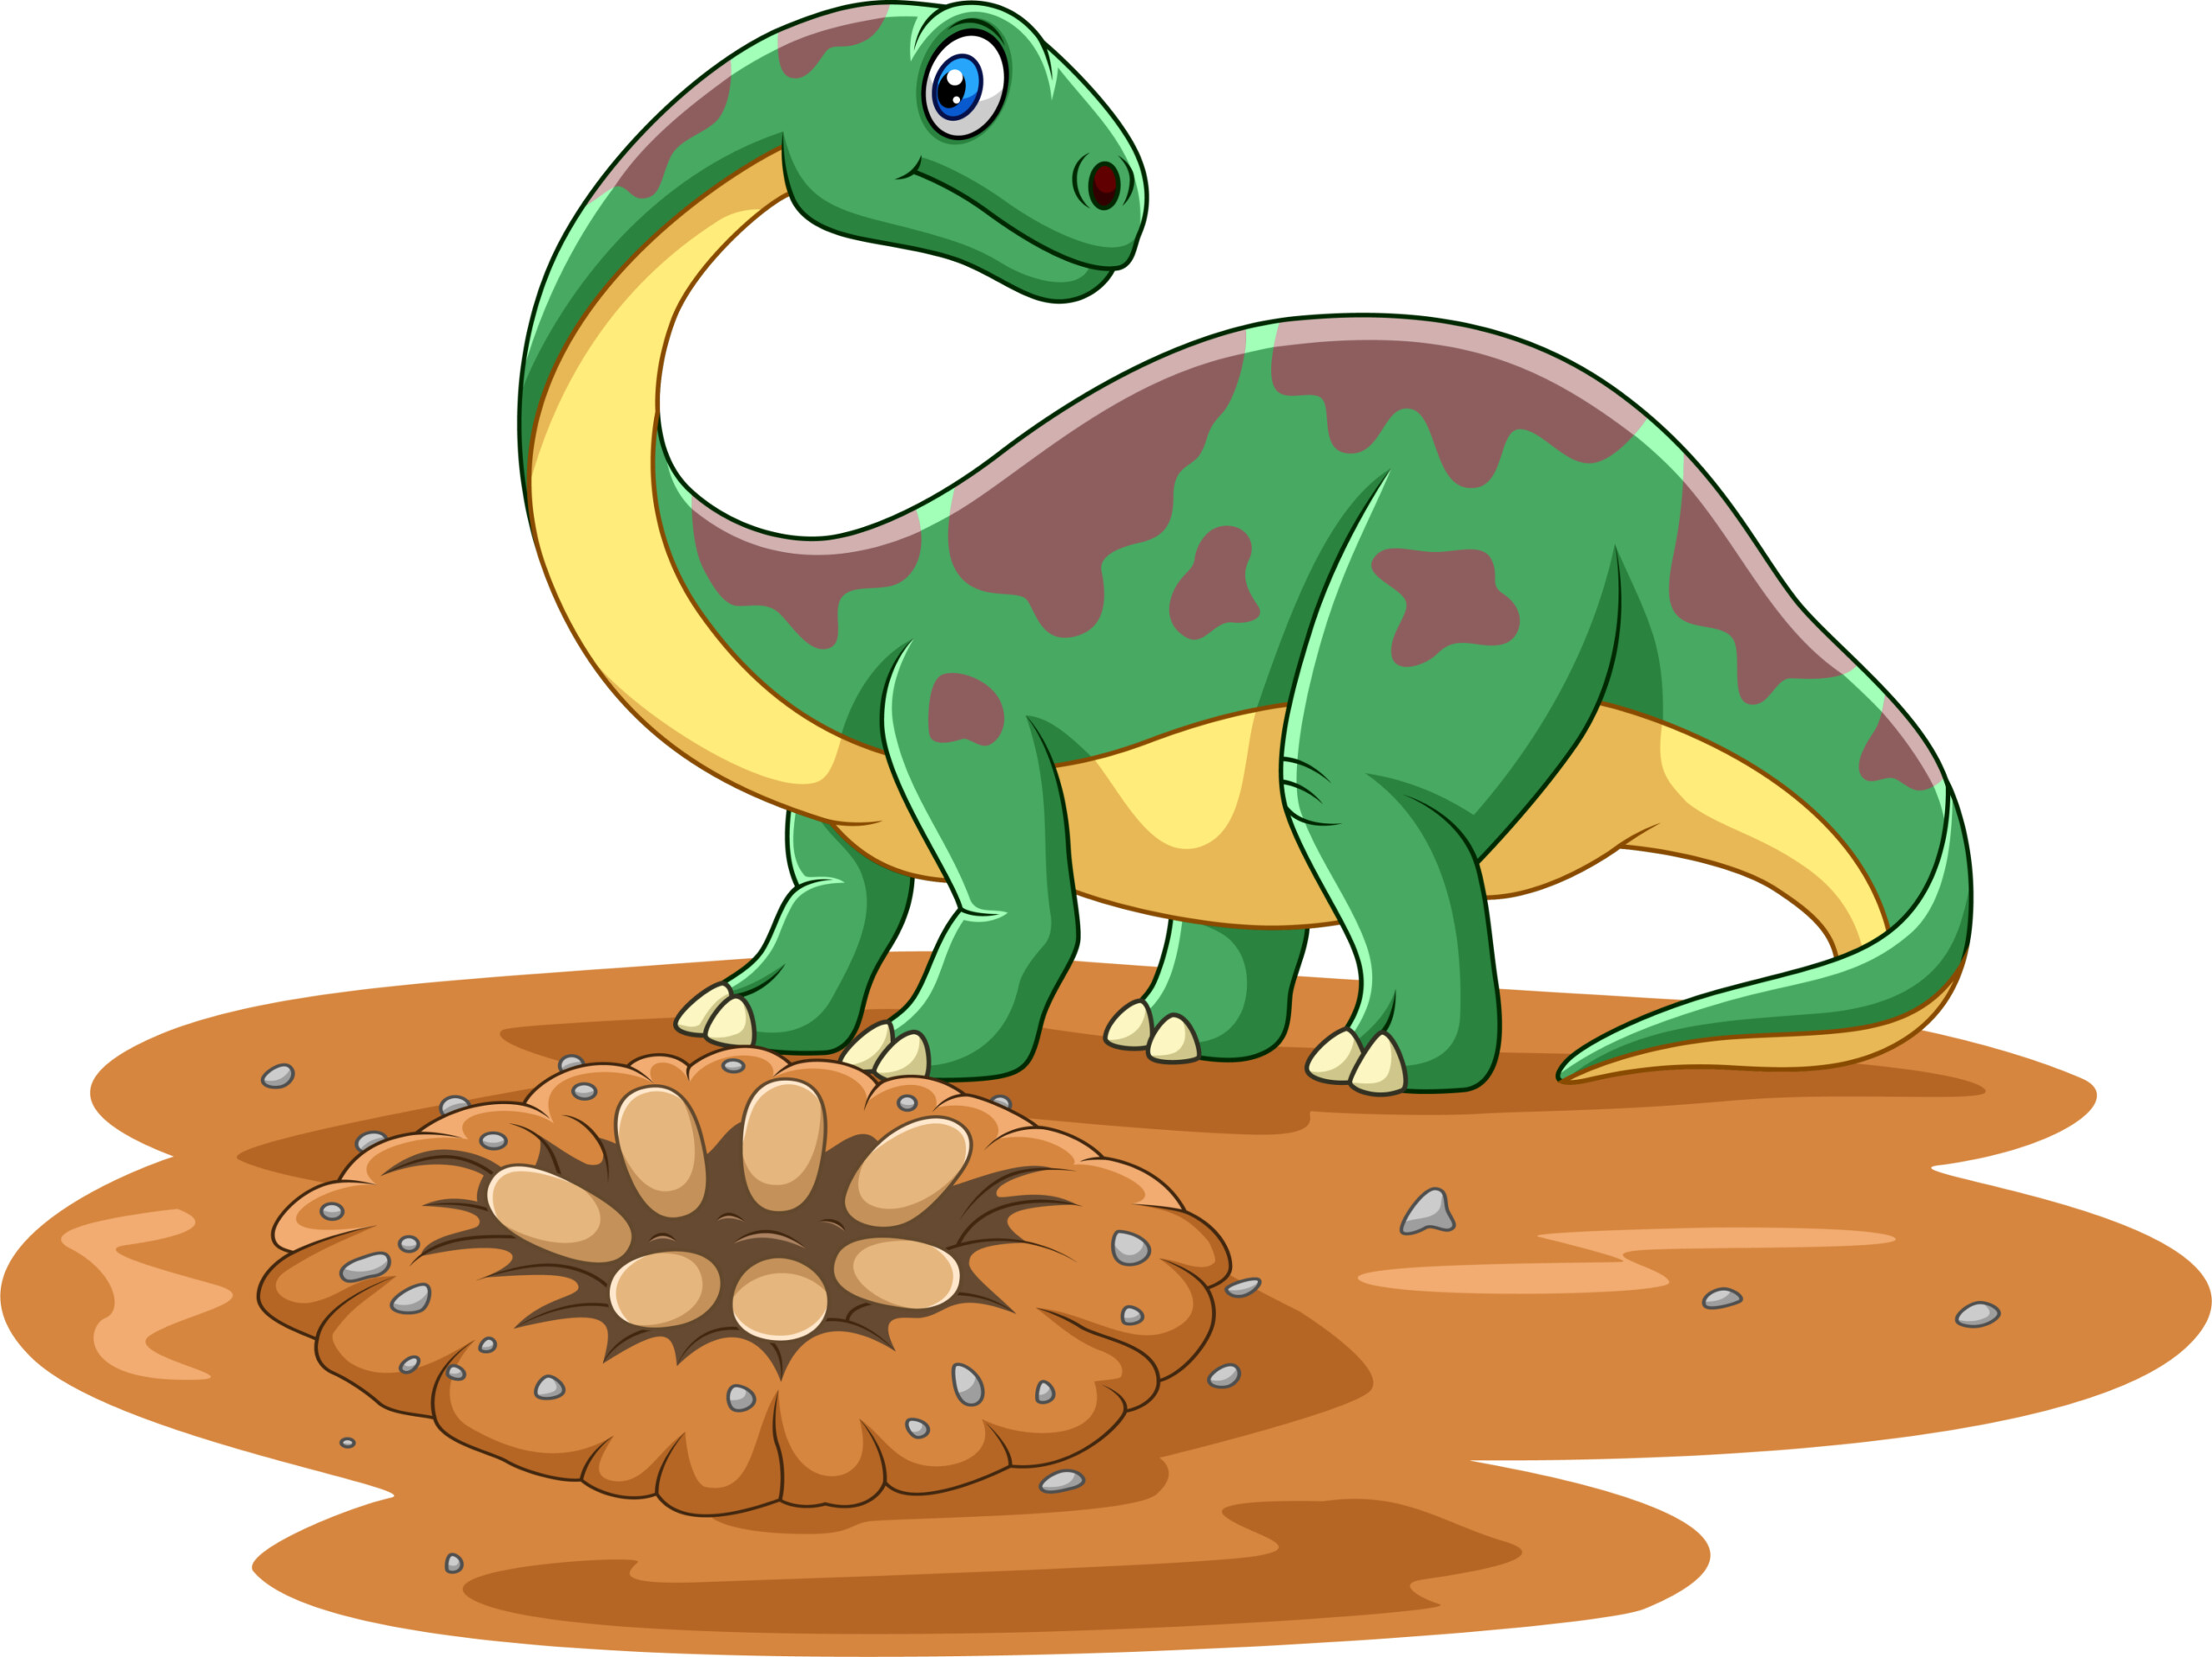 Brontosaurus Dinosaur With Eggs - Original image